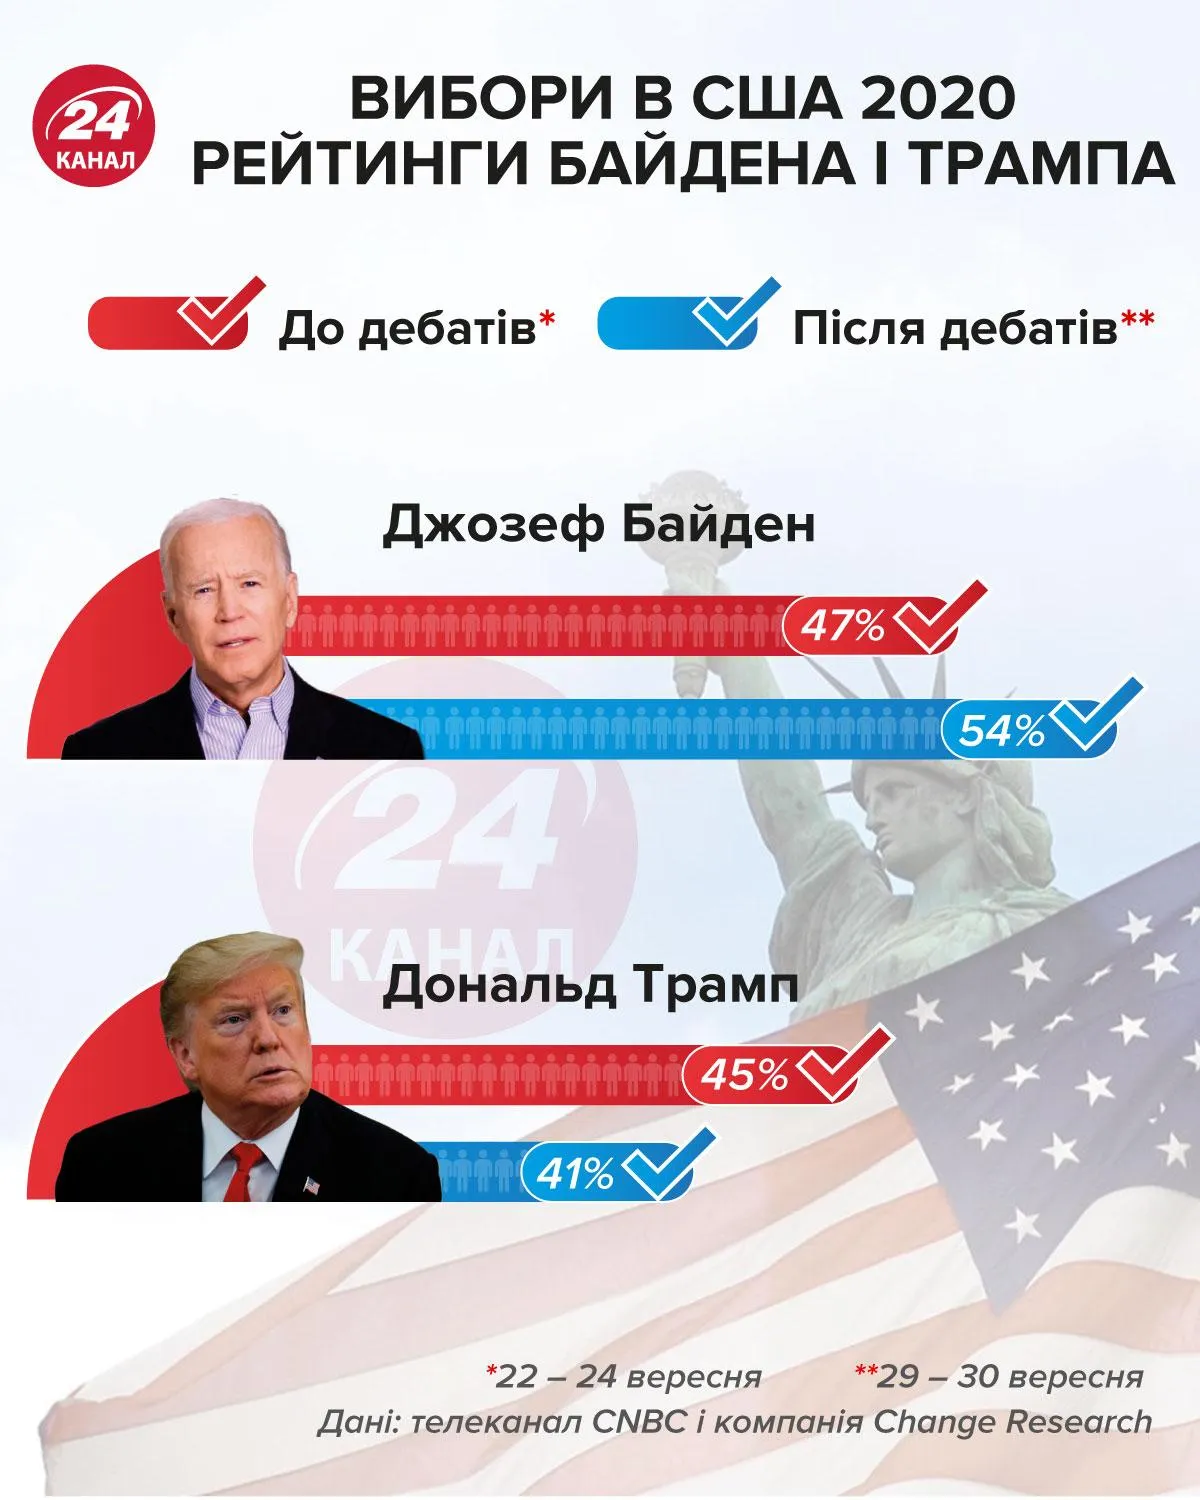 Выборы в США 2020 рейтинги кандидатов инфографика 24 канал